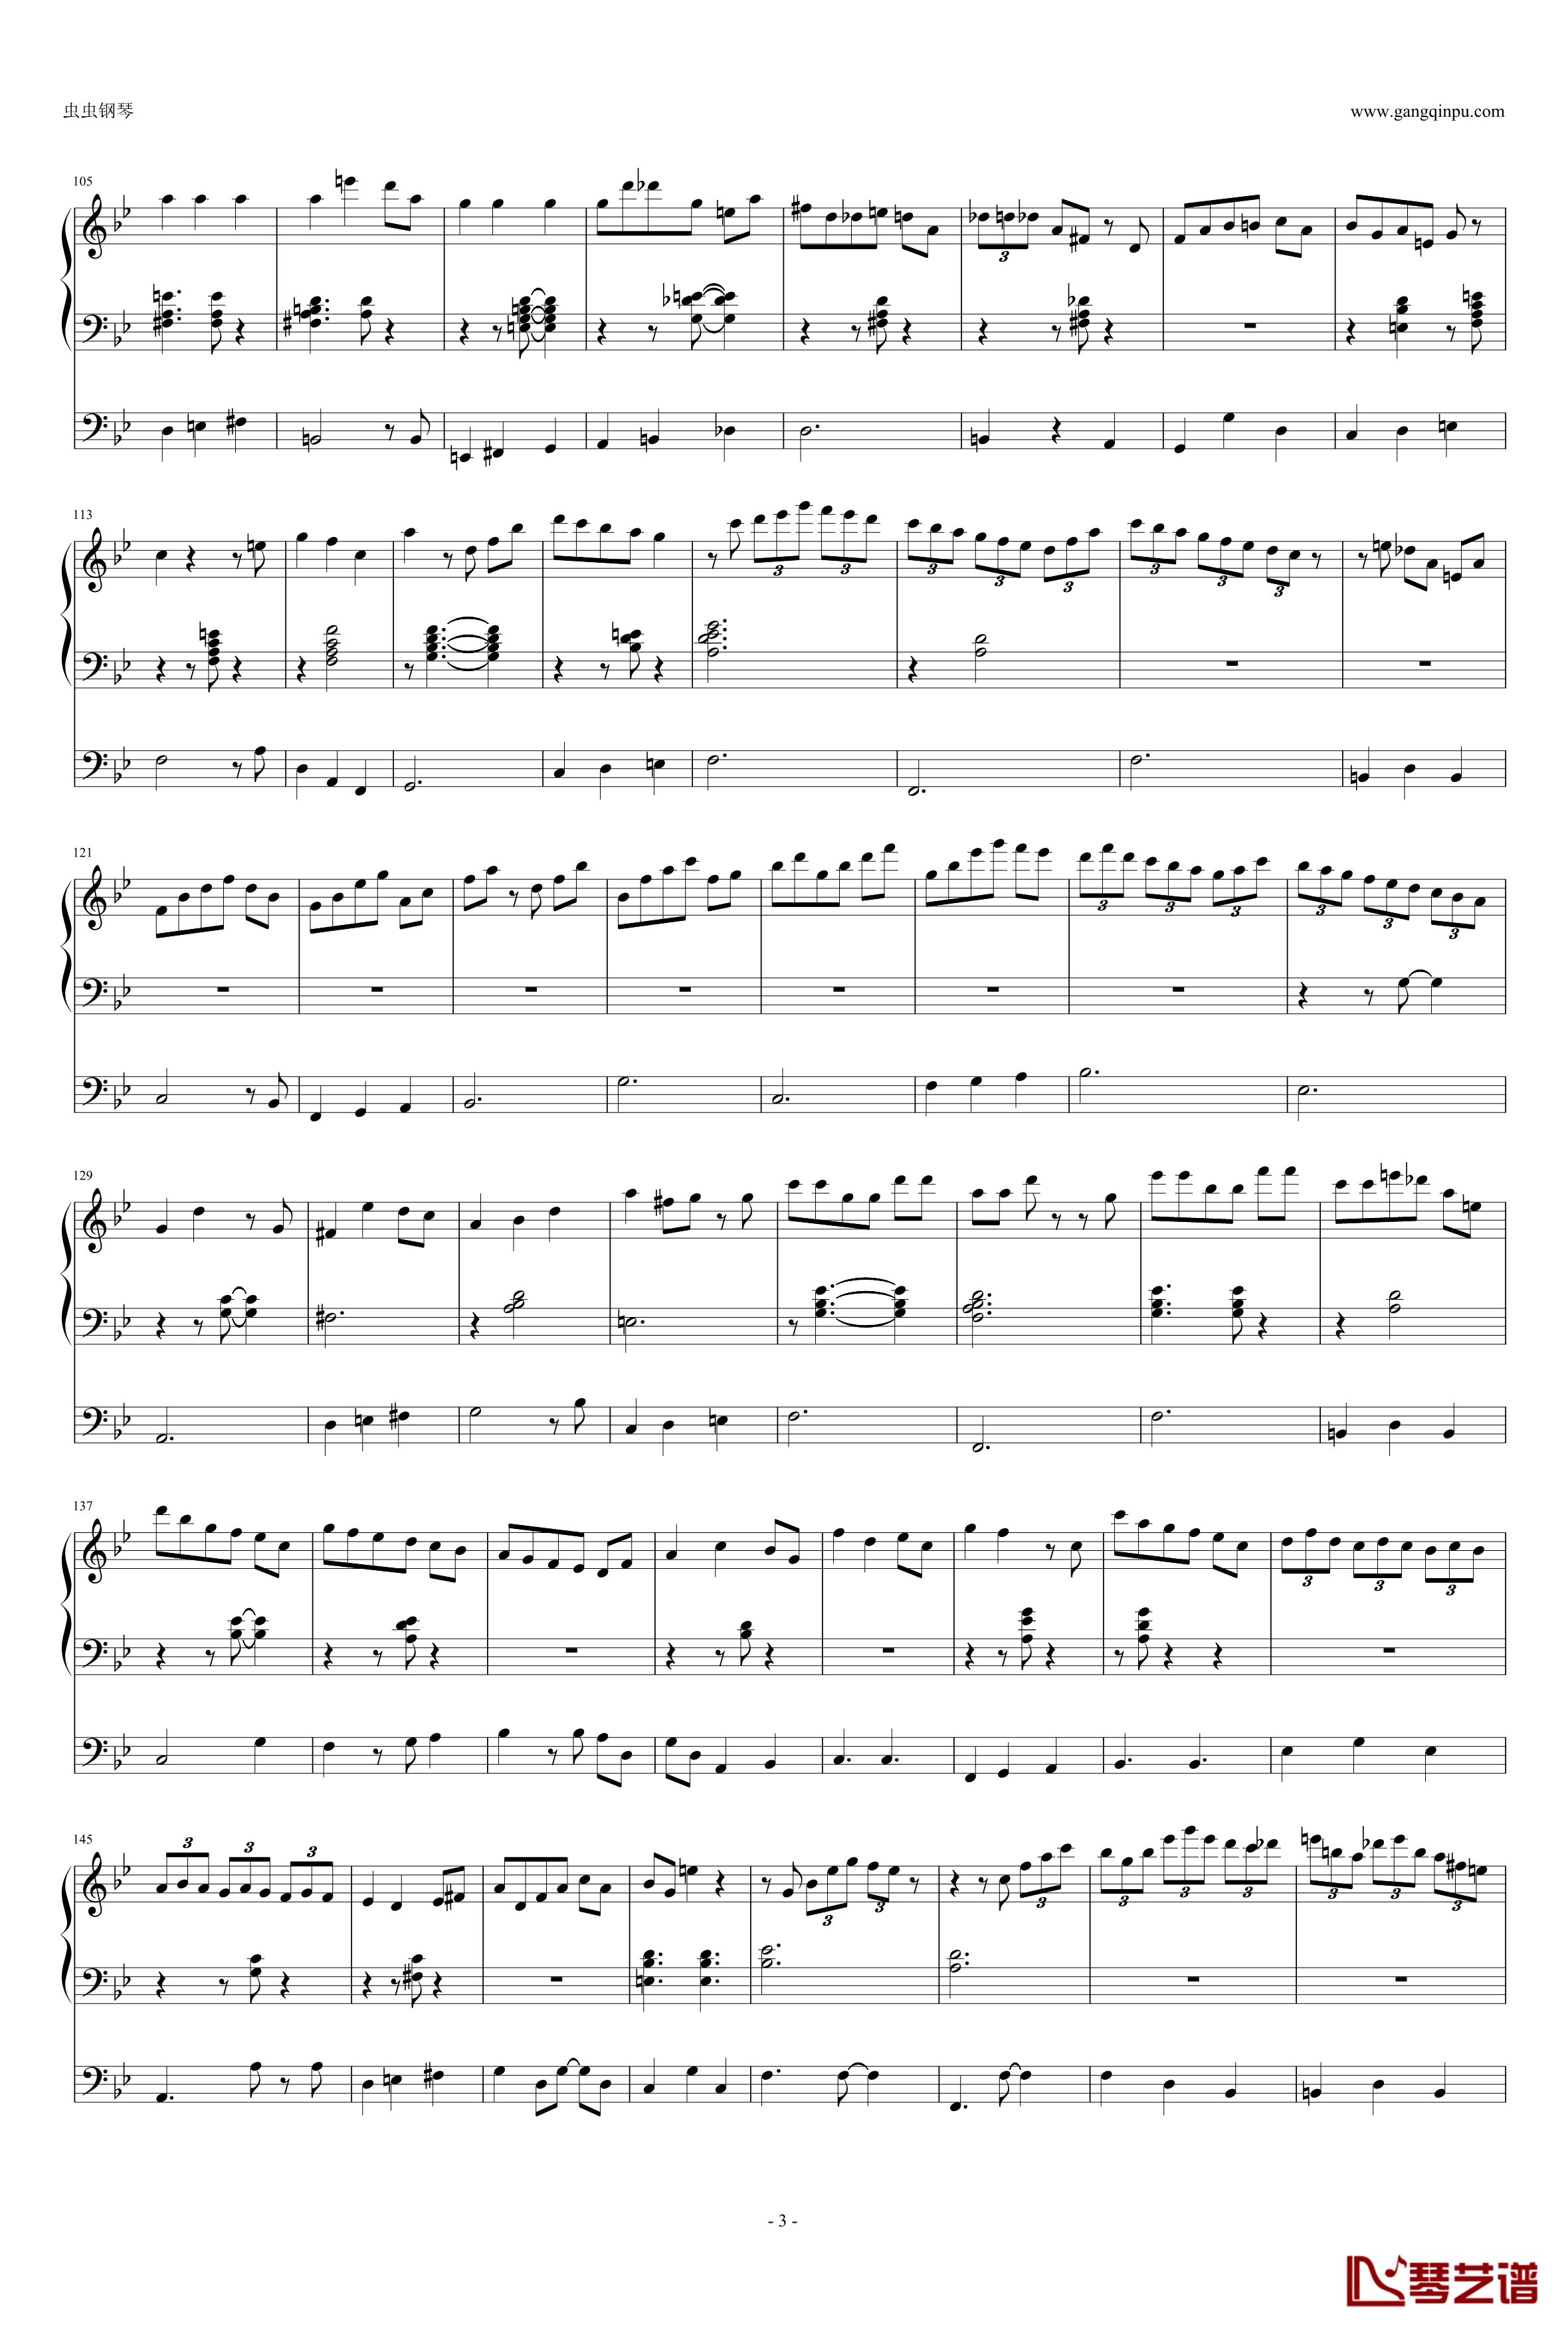 Yokohama Waltz钢琴谱-三行-Louis van Dijk Trio3